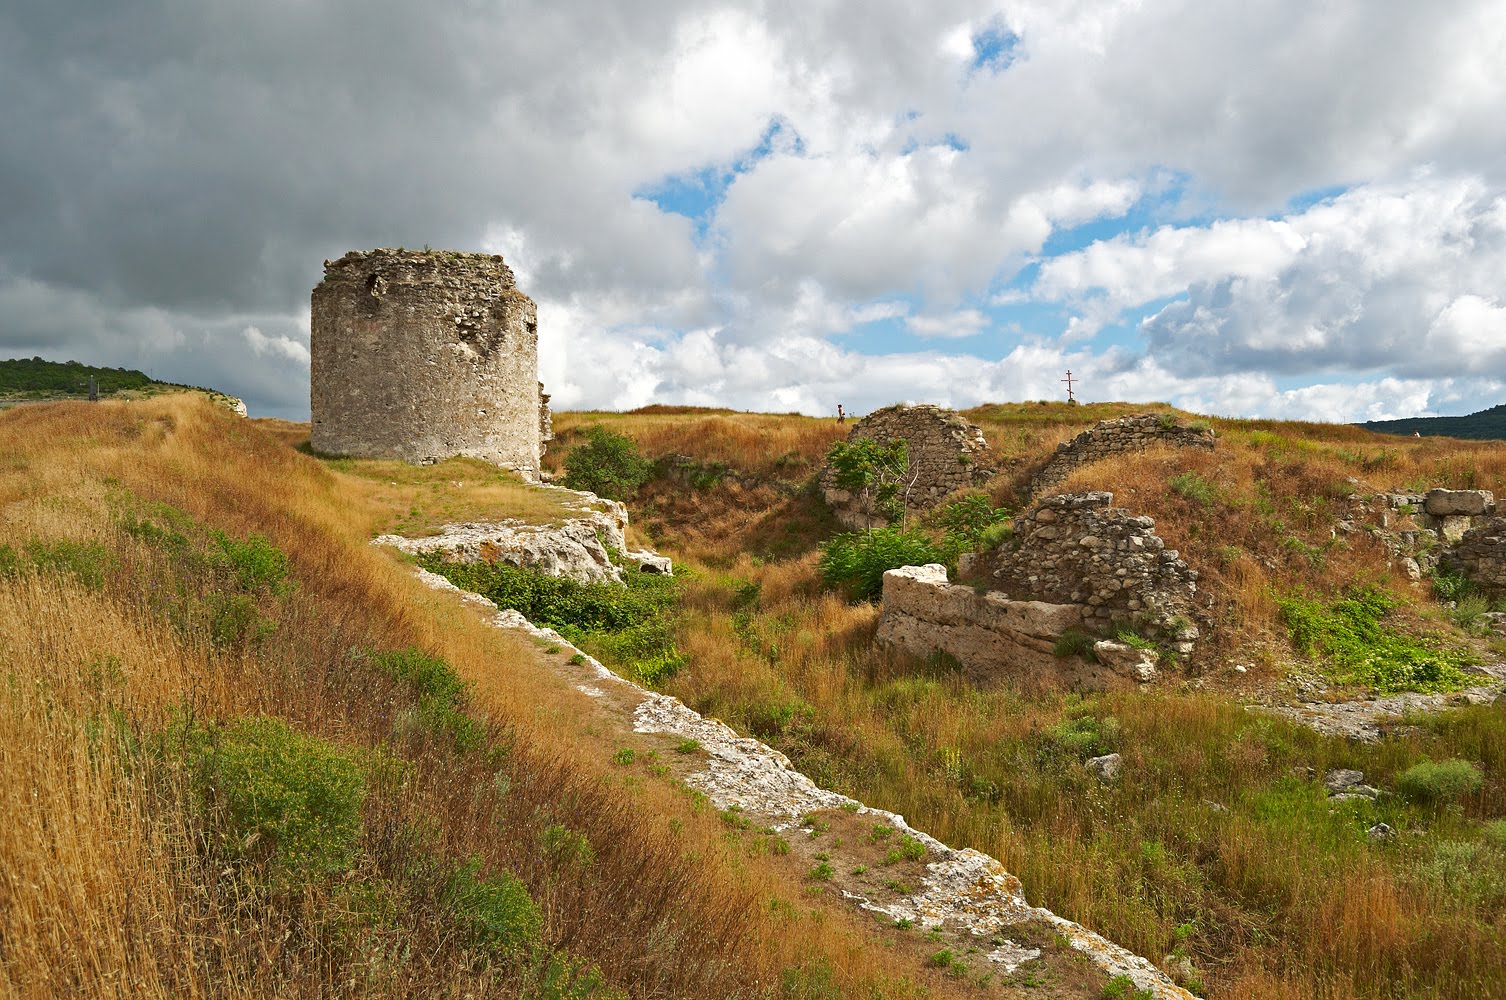 Севастопольская крепость